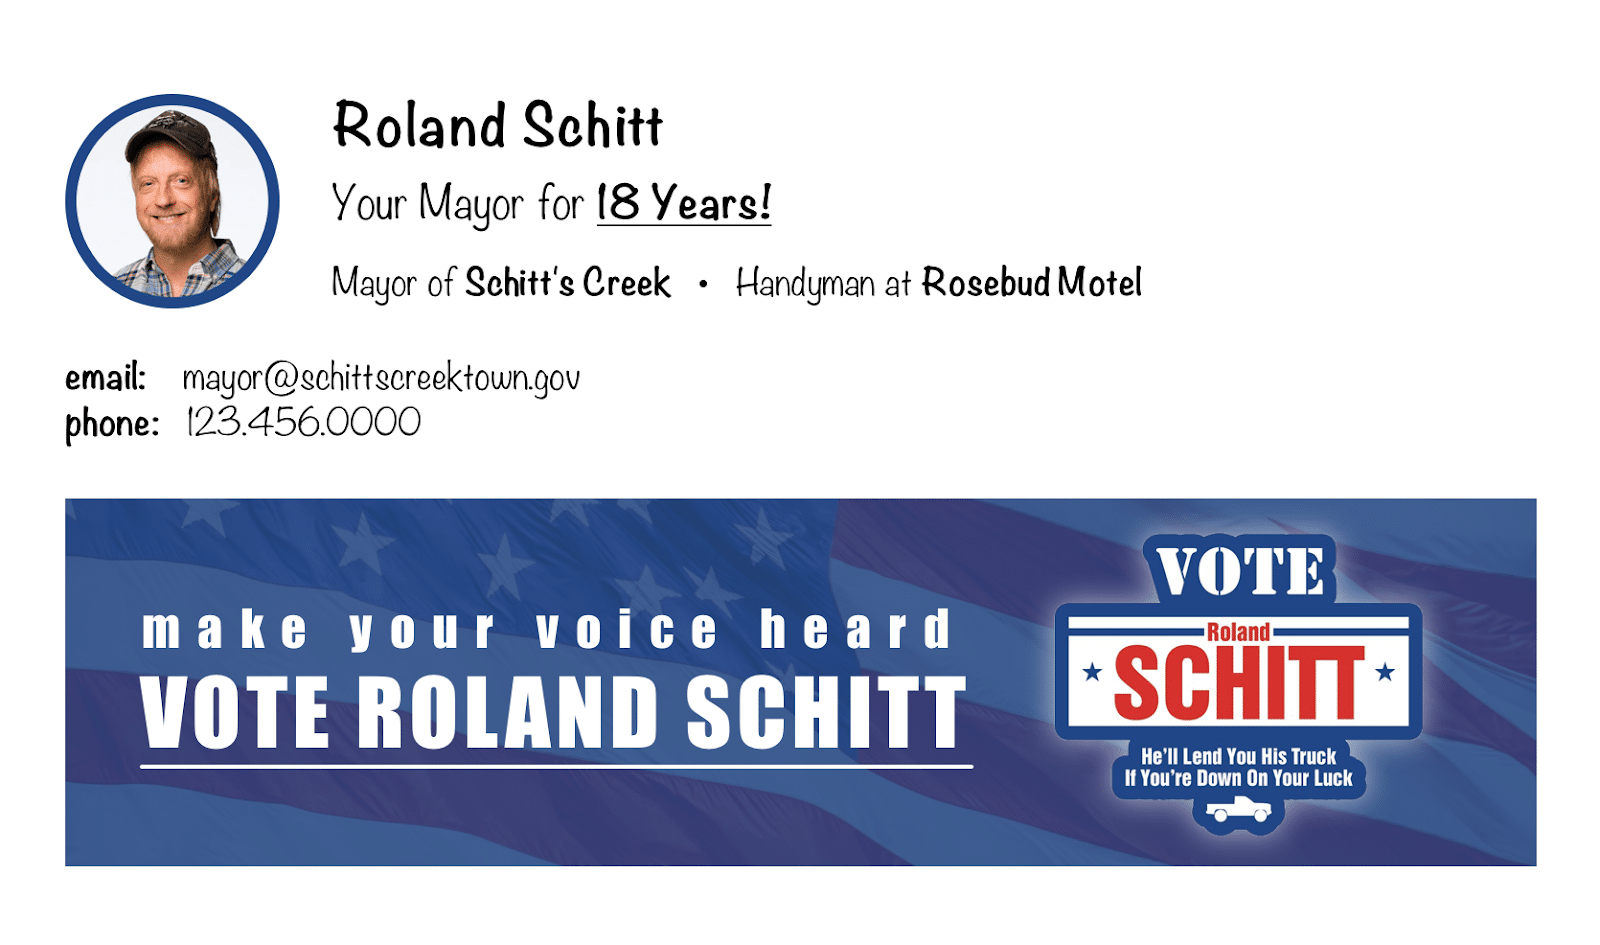 Roland Schitt Email Signature